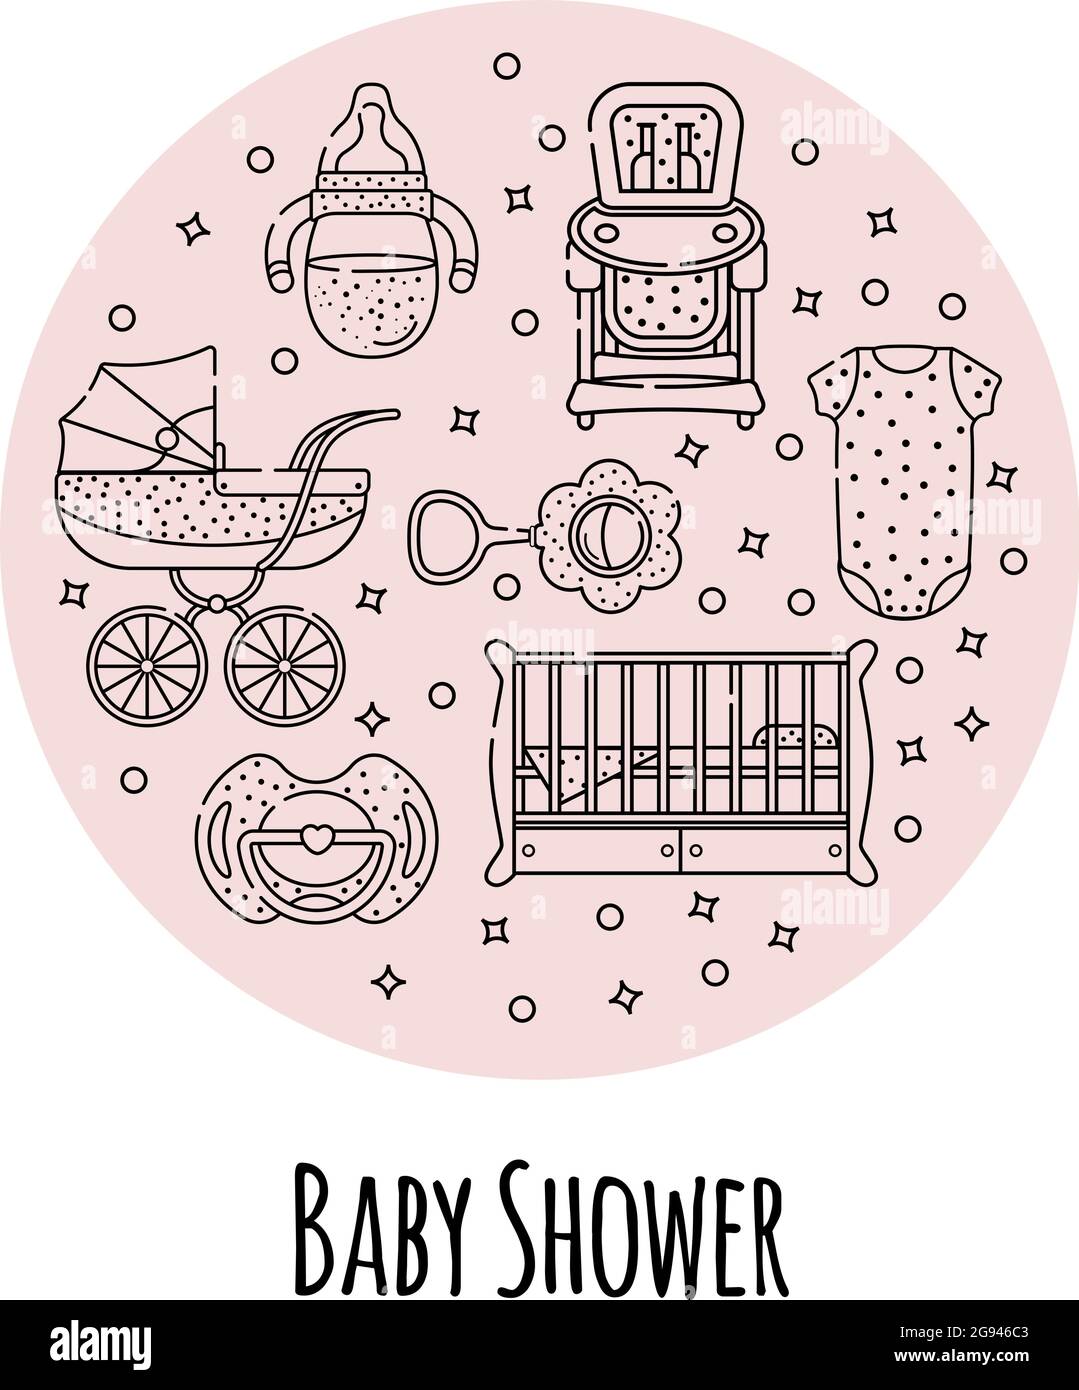 Vektor-Set von Baby-Accessoires für das Neugeborene. Kinderbett, Stuhl, Kinderwagen, Flasche, Spielzeug und Kleidung in einem linearen Stil. Isolierte Objekte auf einem weißen Hintergrund Stock Vektor